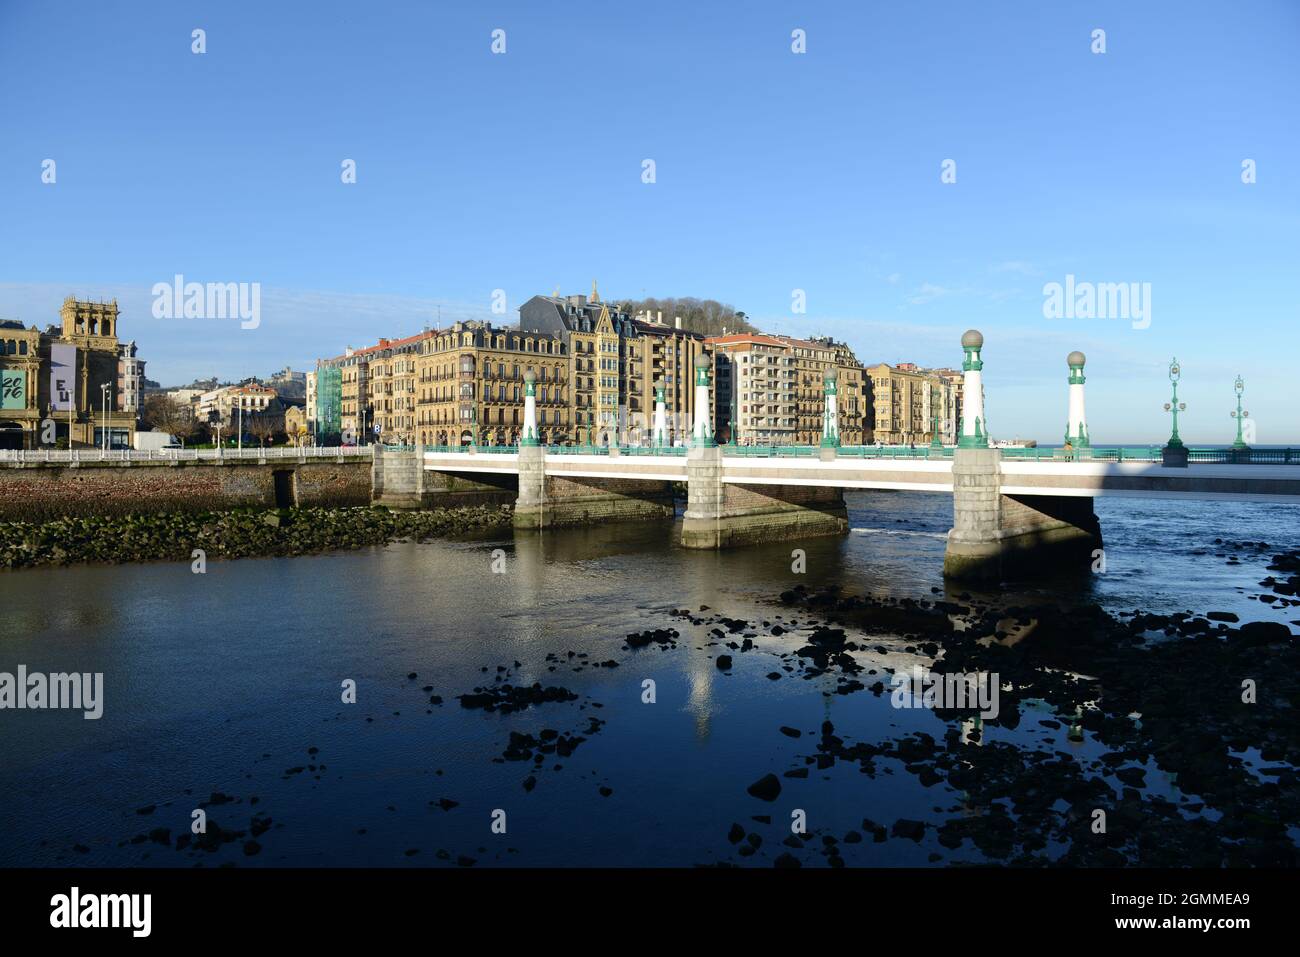 Puente Del Kursaal in Donostia-San Sebastian, Spain. Stock Photo